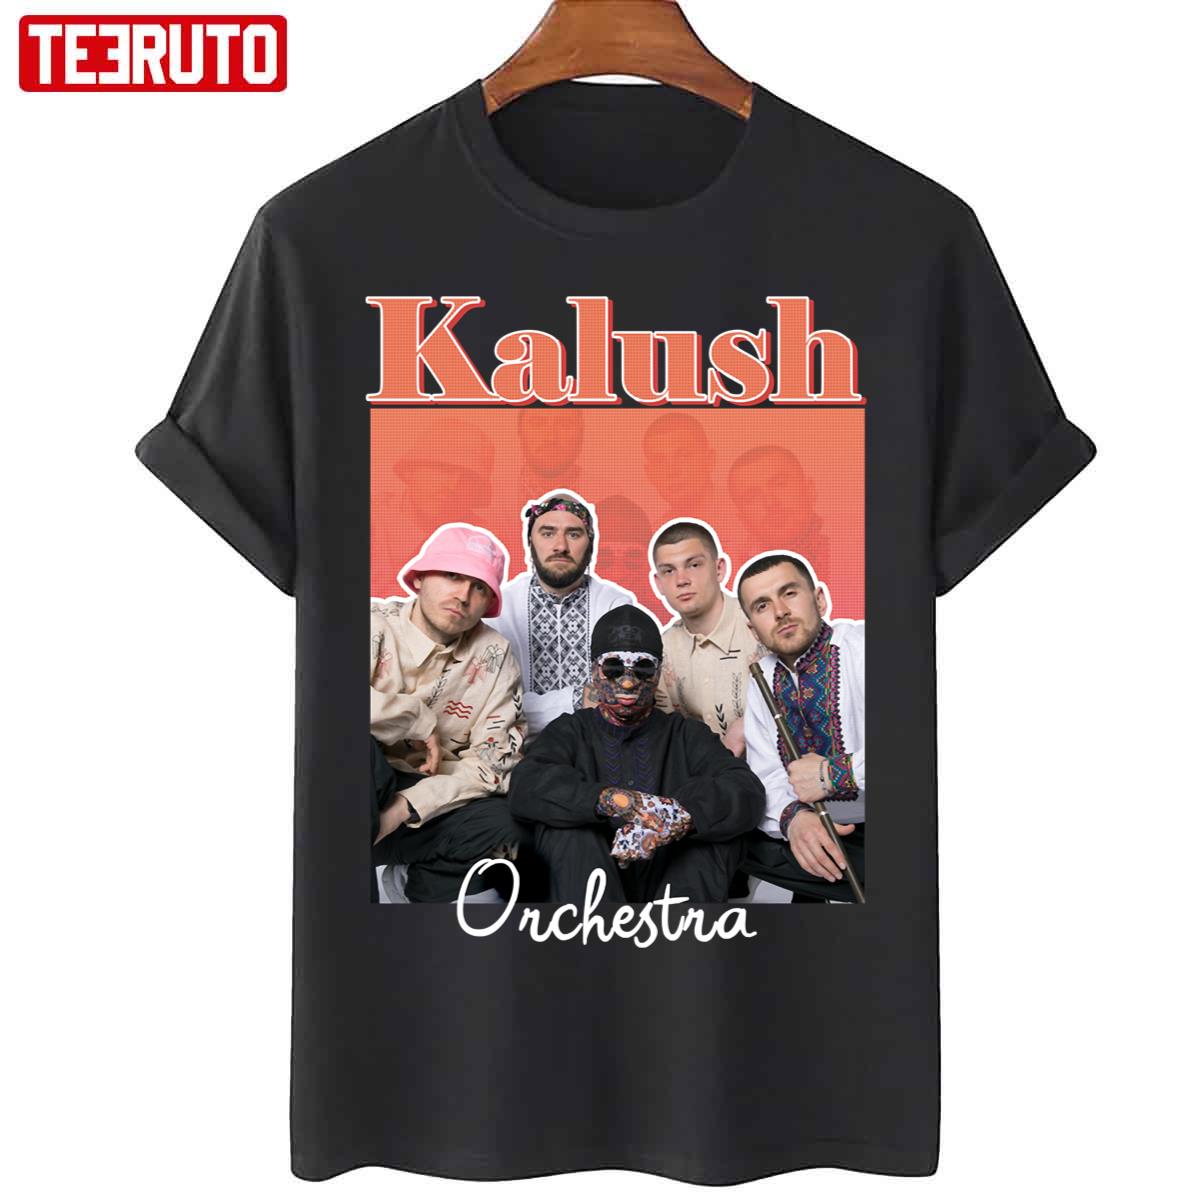 Kalush Orchestra Stefania Eurovision 2022 Ukraine Unisex T-Shirt